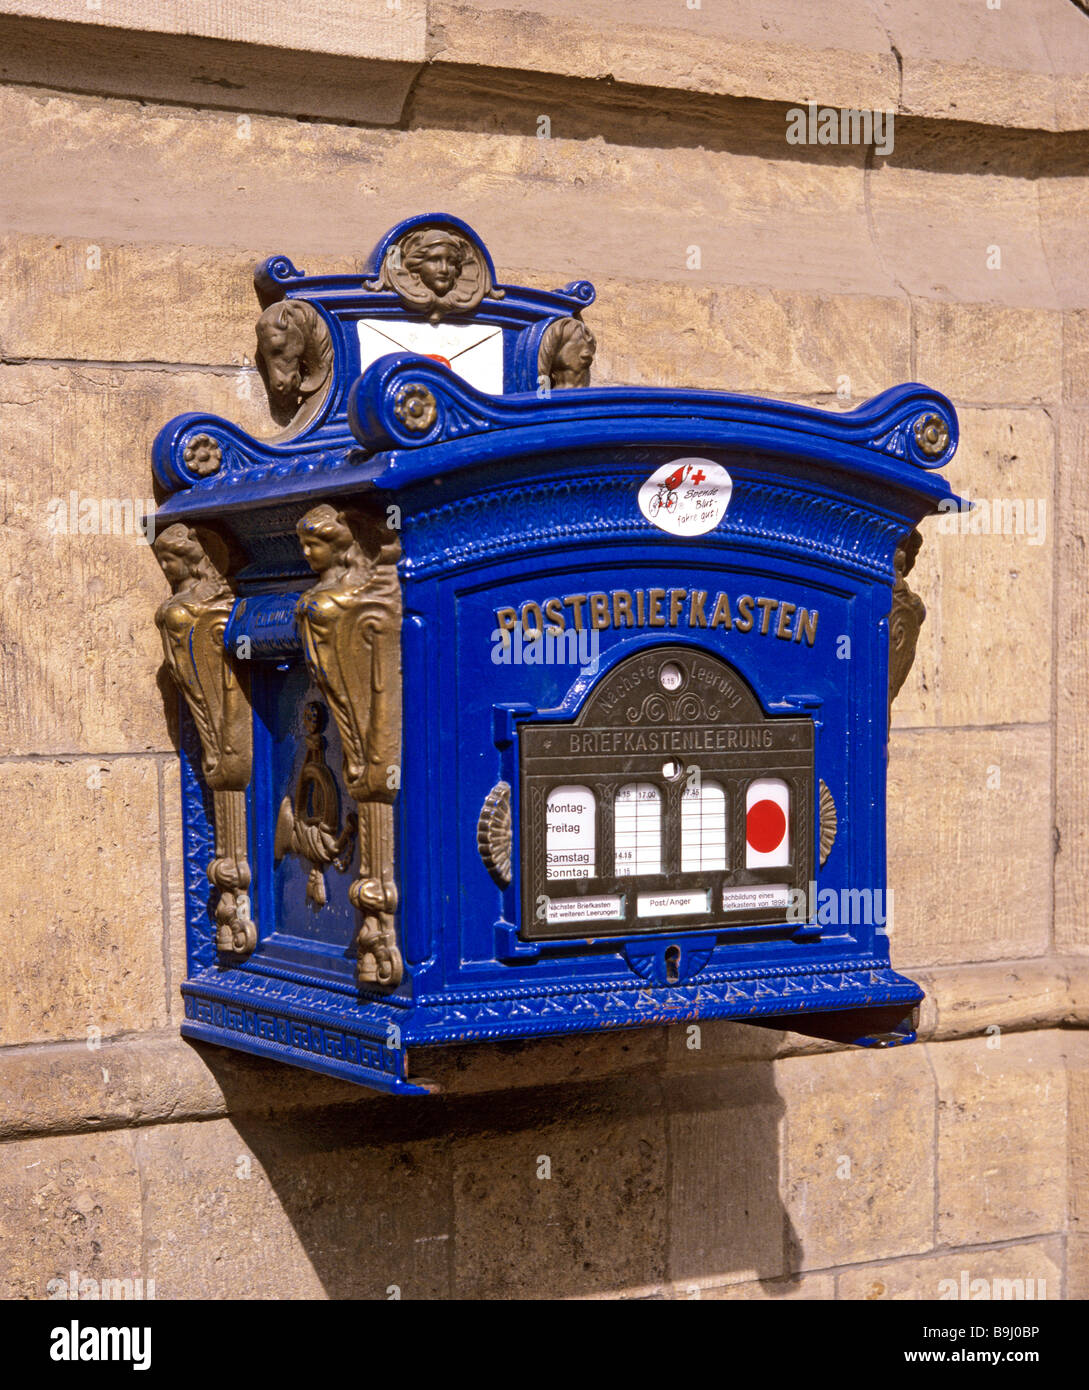 Blauer Briefkasten in Erfurt, Thüringen, Deutschland Stockfotografie - Alamy